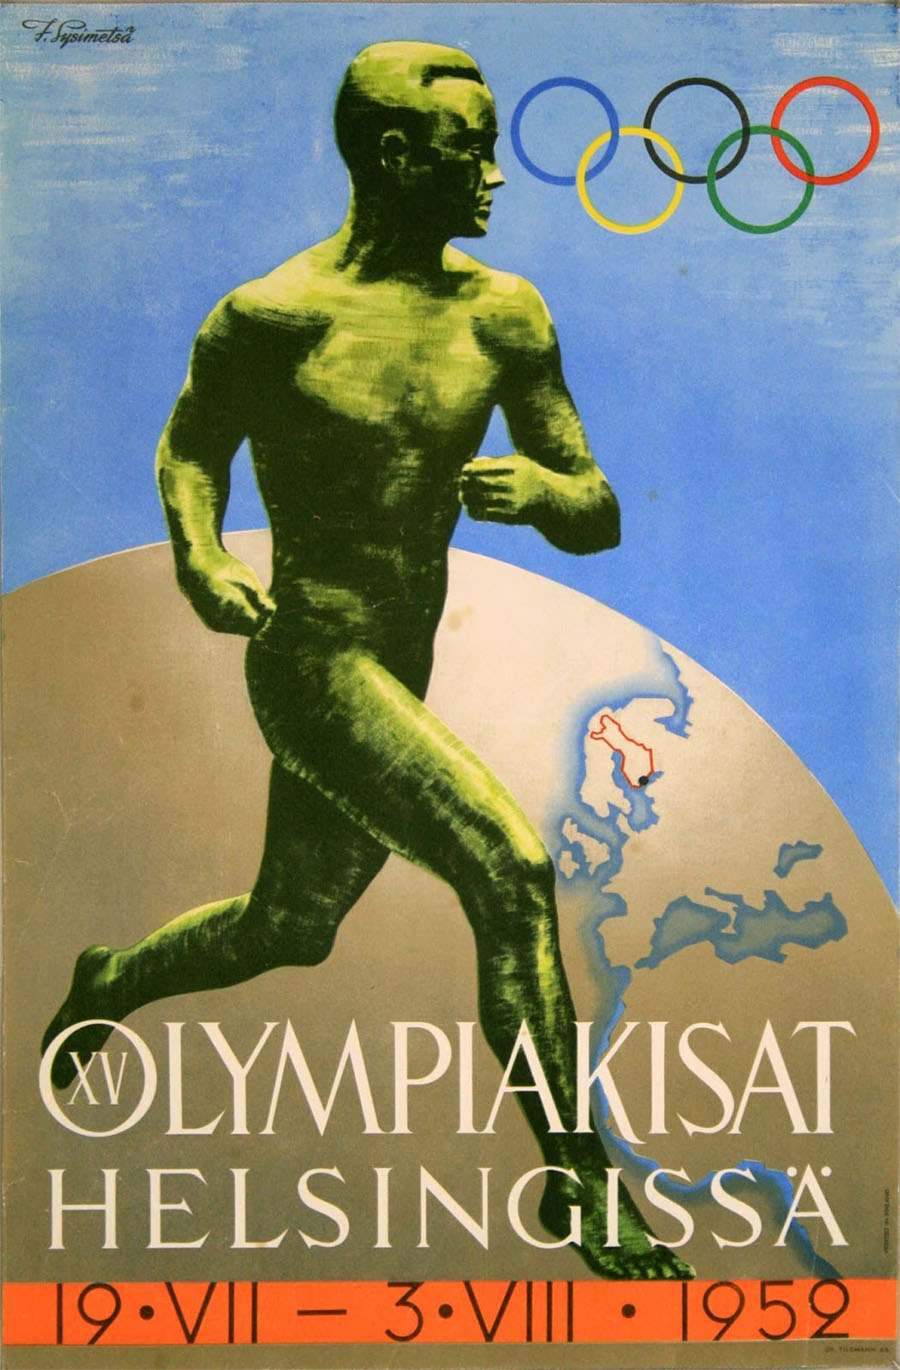 XV OLYMPIA HELSINKI 1952